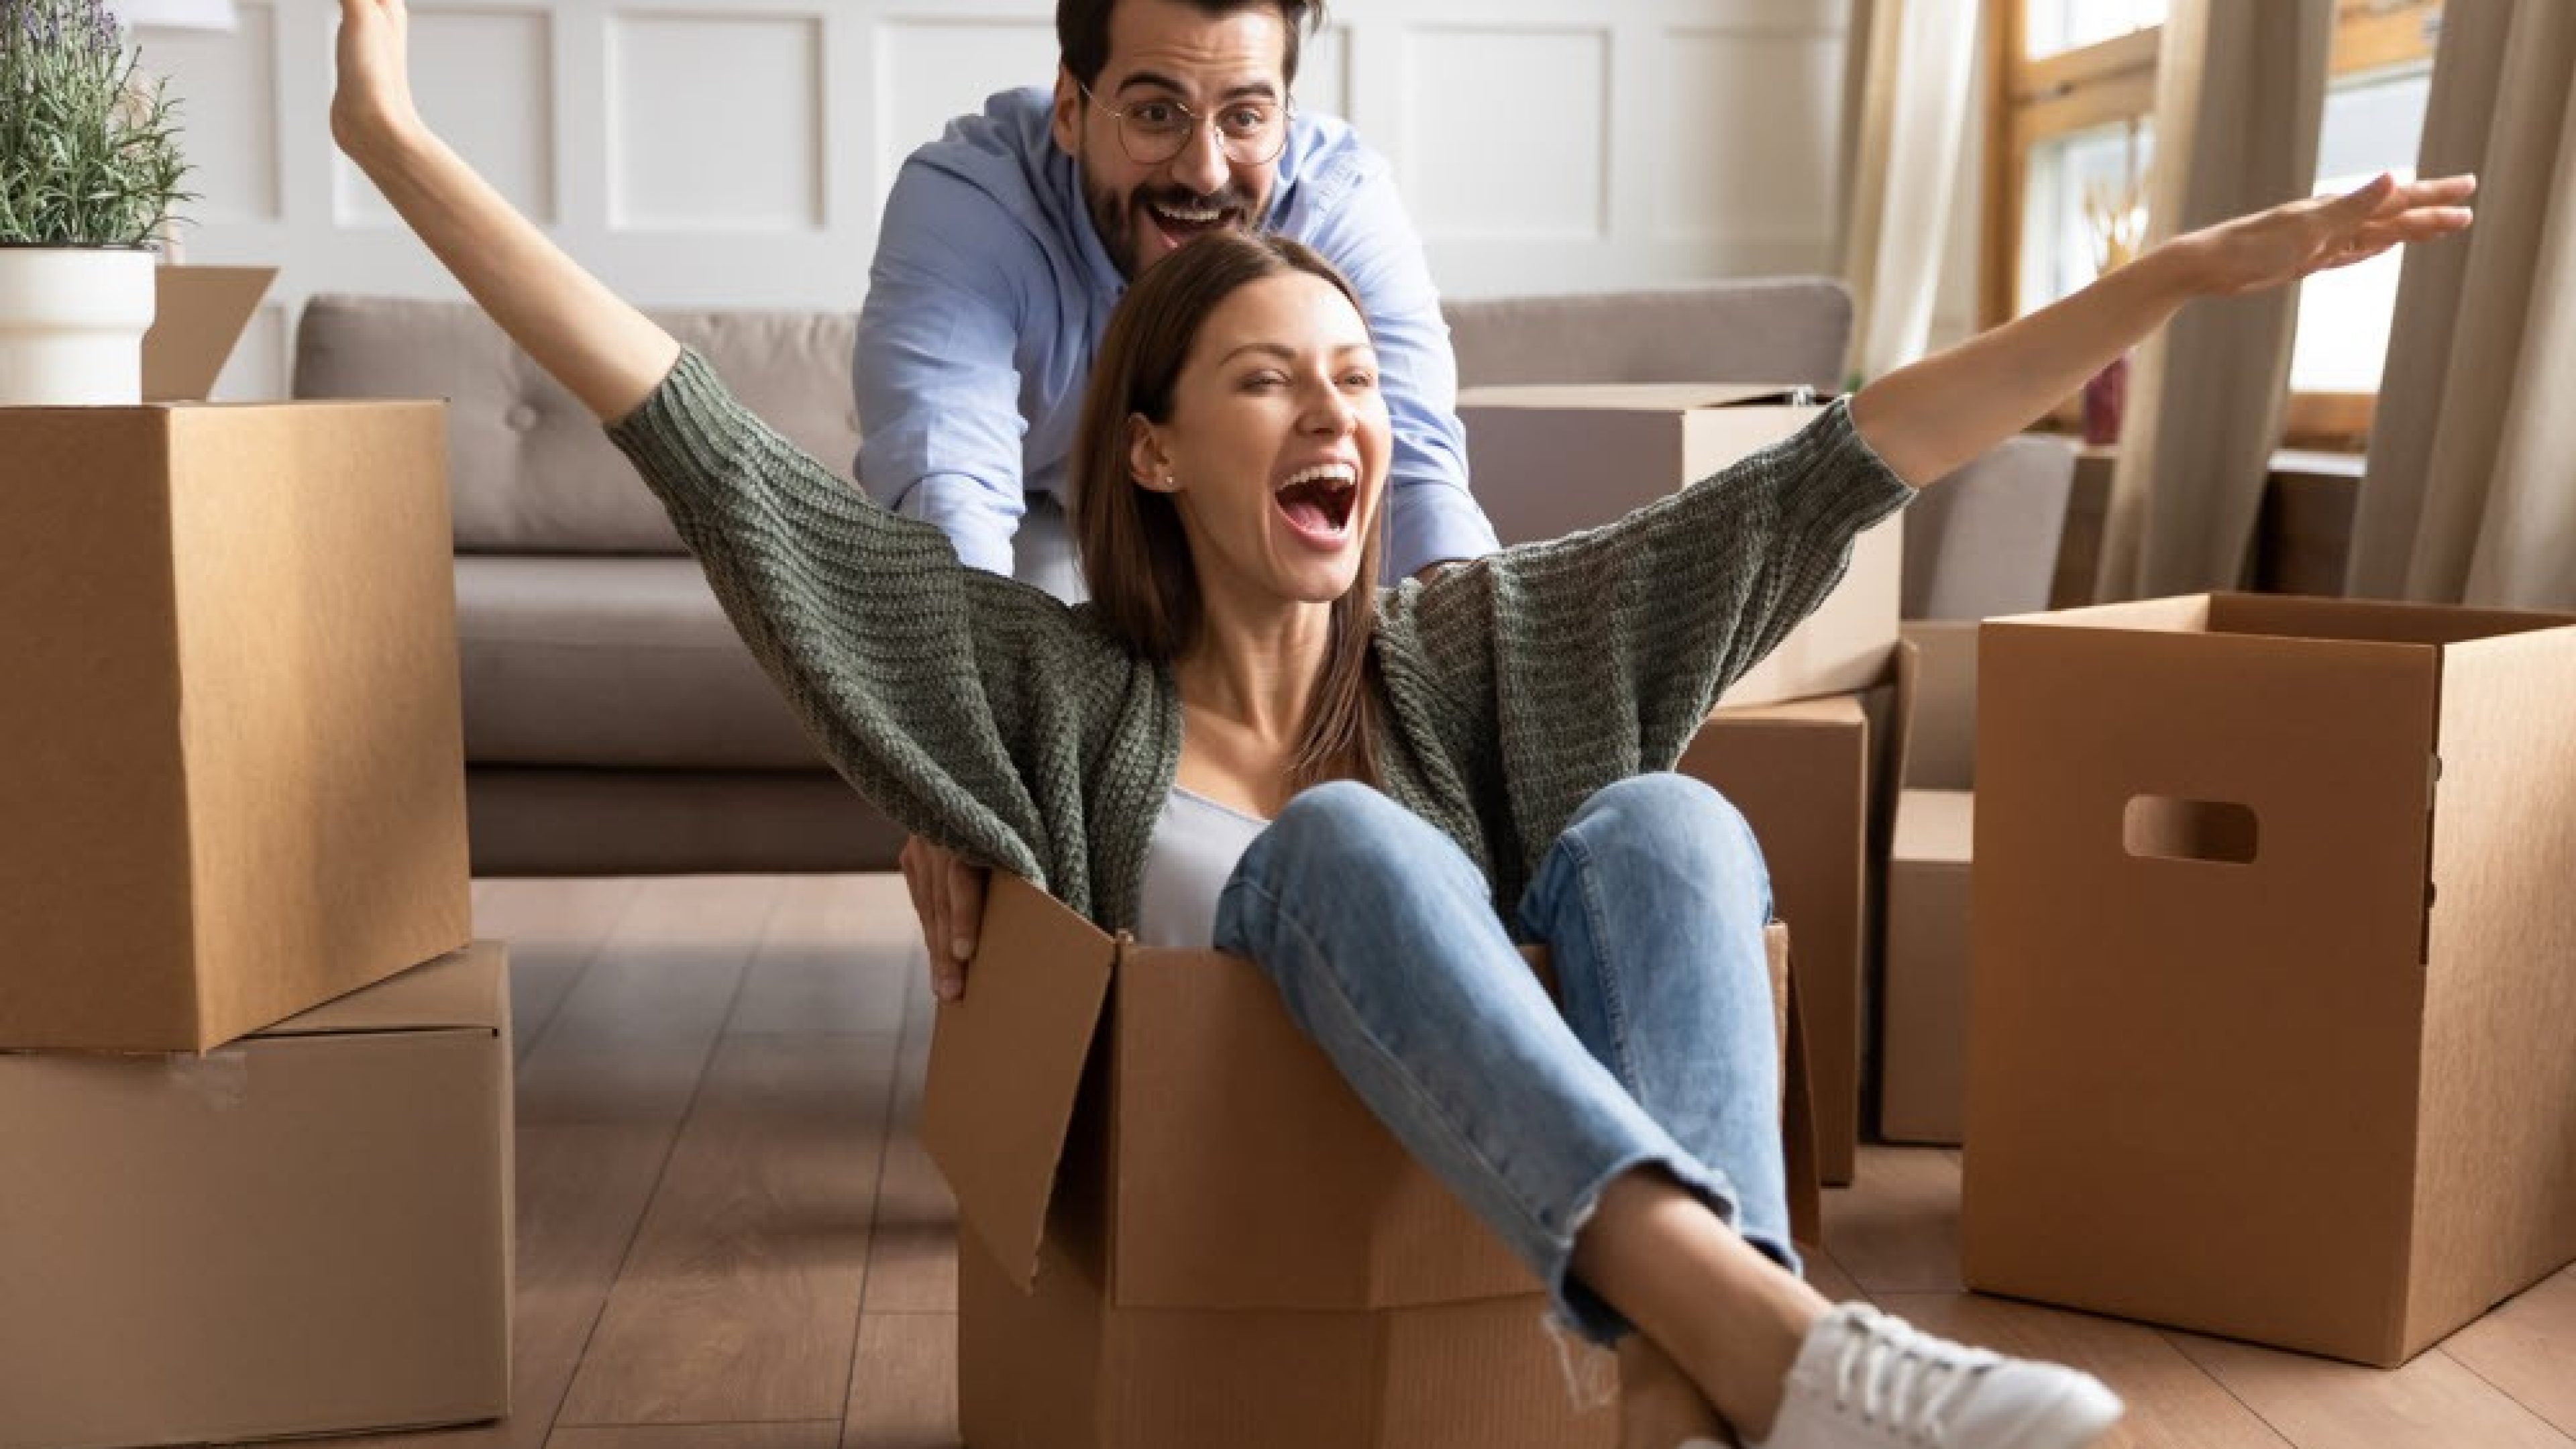 Una giovane donna sorridente è seduta in uno scatolone e il marito la spinge attraverso il soggiorno, pieno di scatoloni per il trasloco.